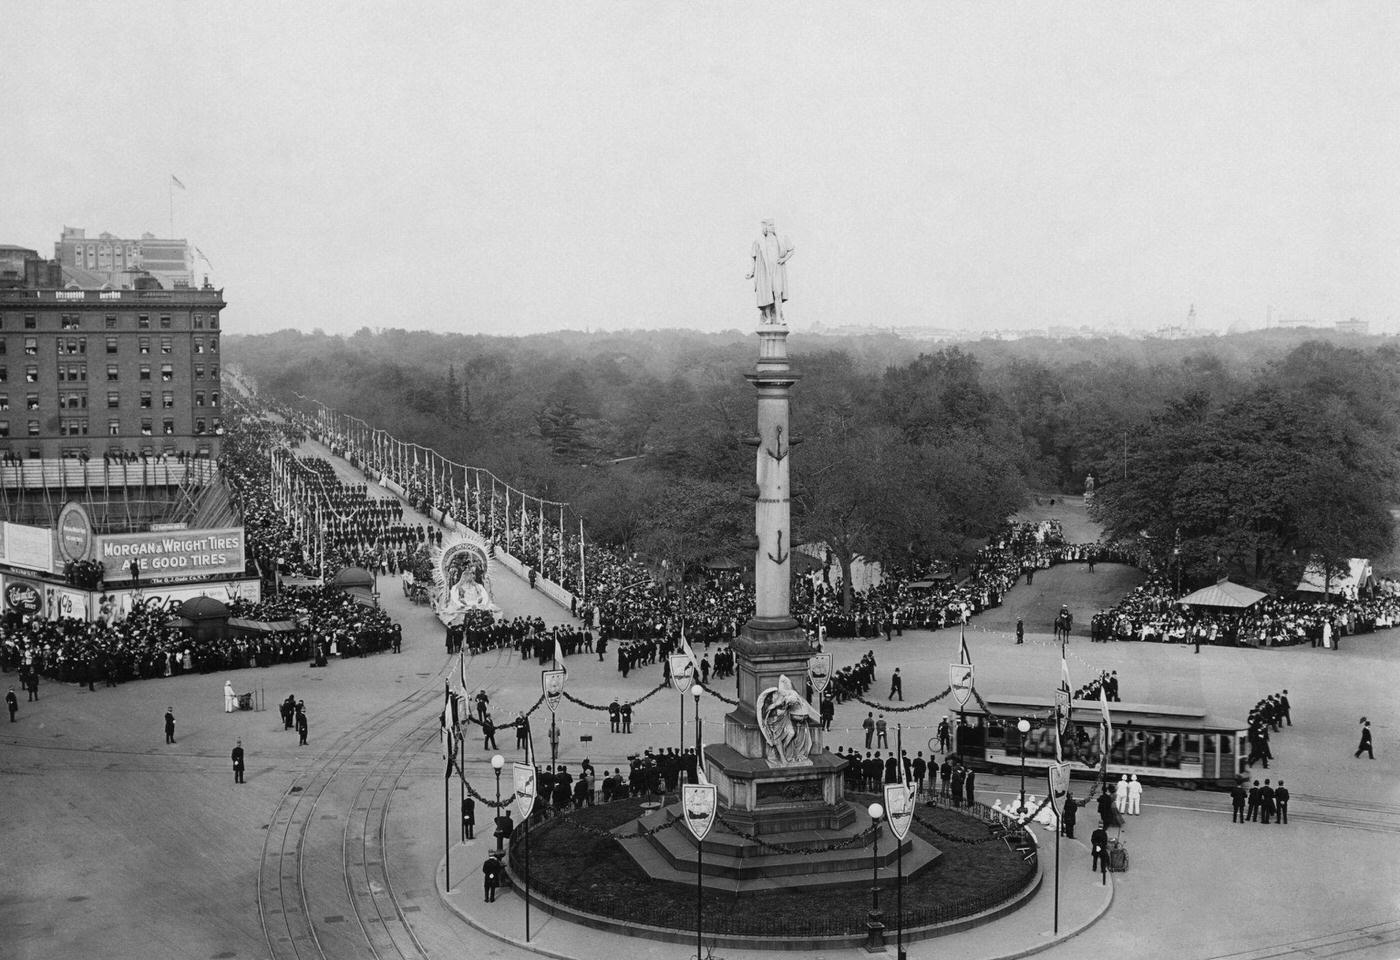 Columbus Circle Parade, Crowds Watching, Manhattan, 1920.